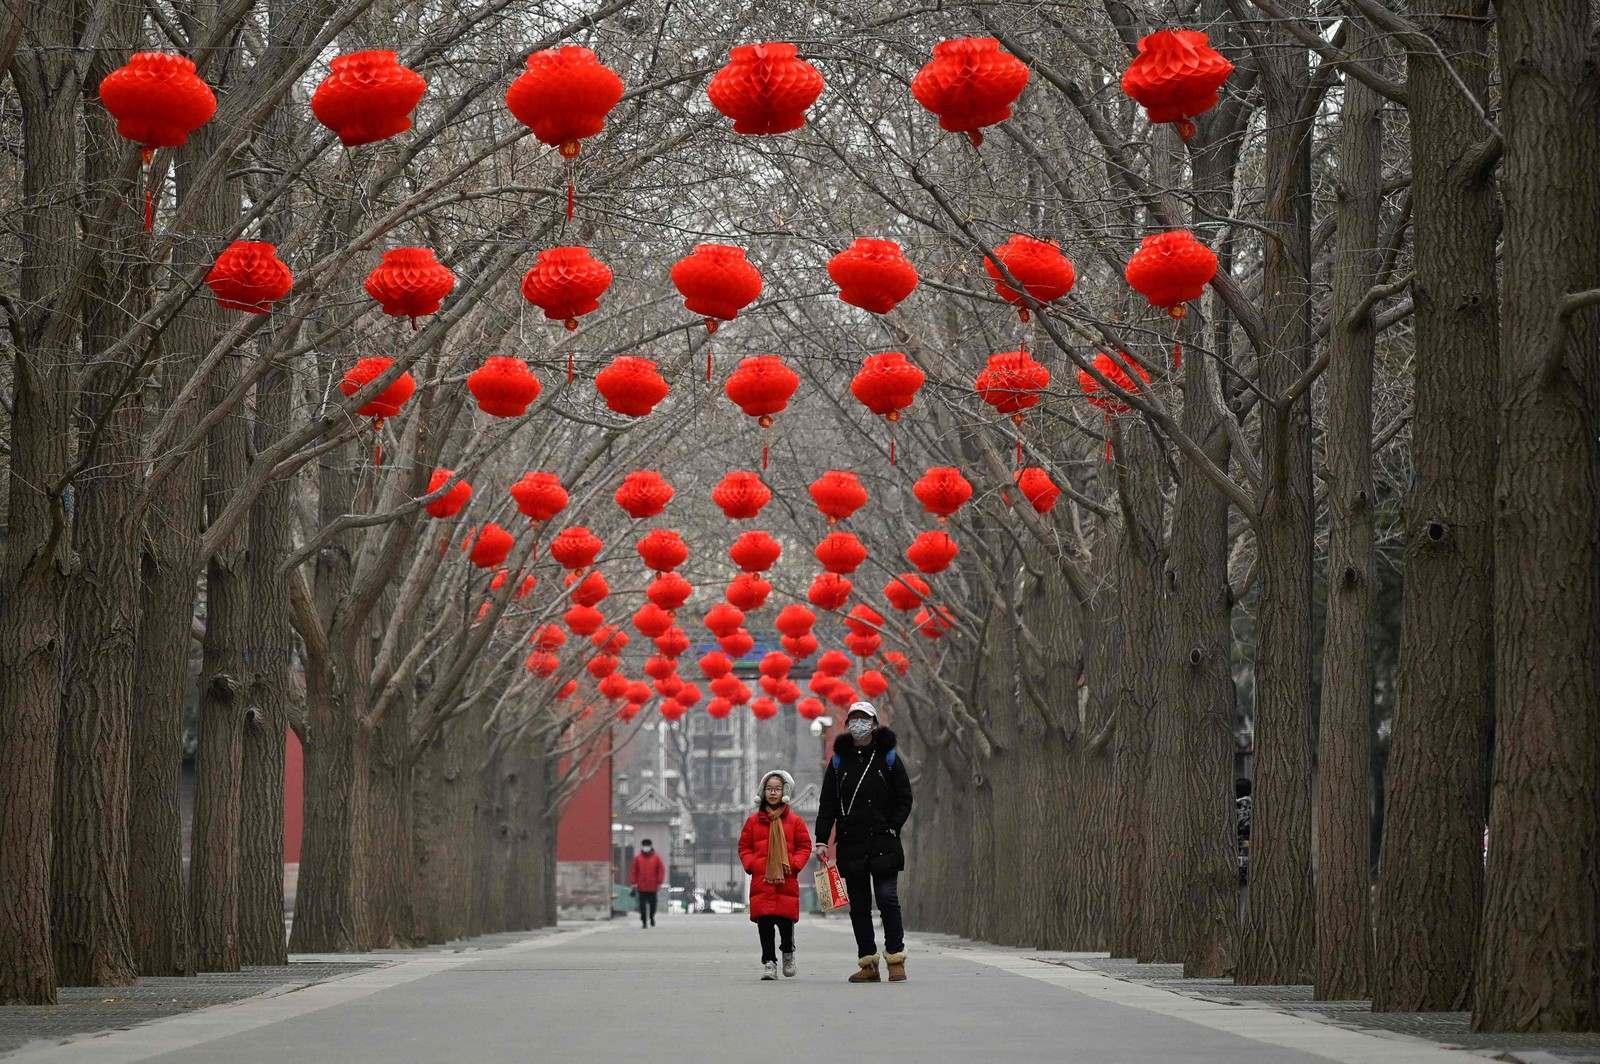 Mulher e uma criança caminham ao longo de uma estrada decorada com lanternas vermelhas para a celebração do Ano Novo Lunar Chinês em um parque de Pequim. — Foto: WANG Zhao / AFP